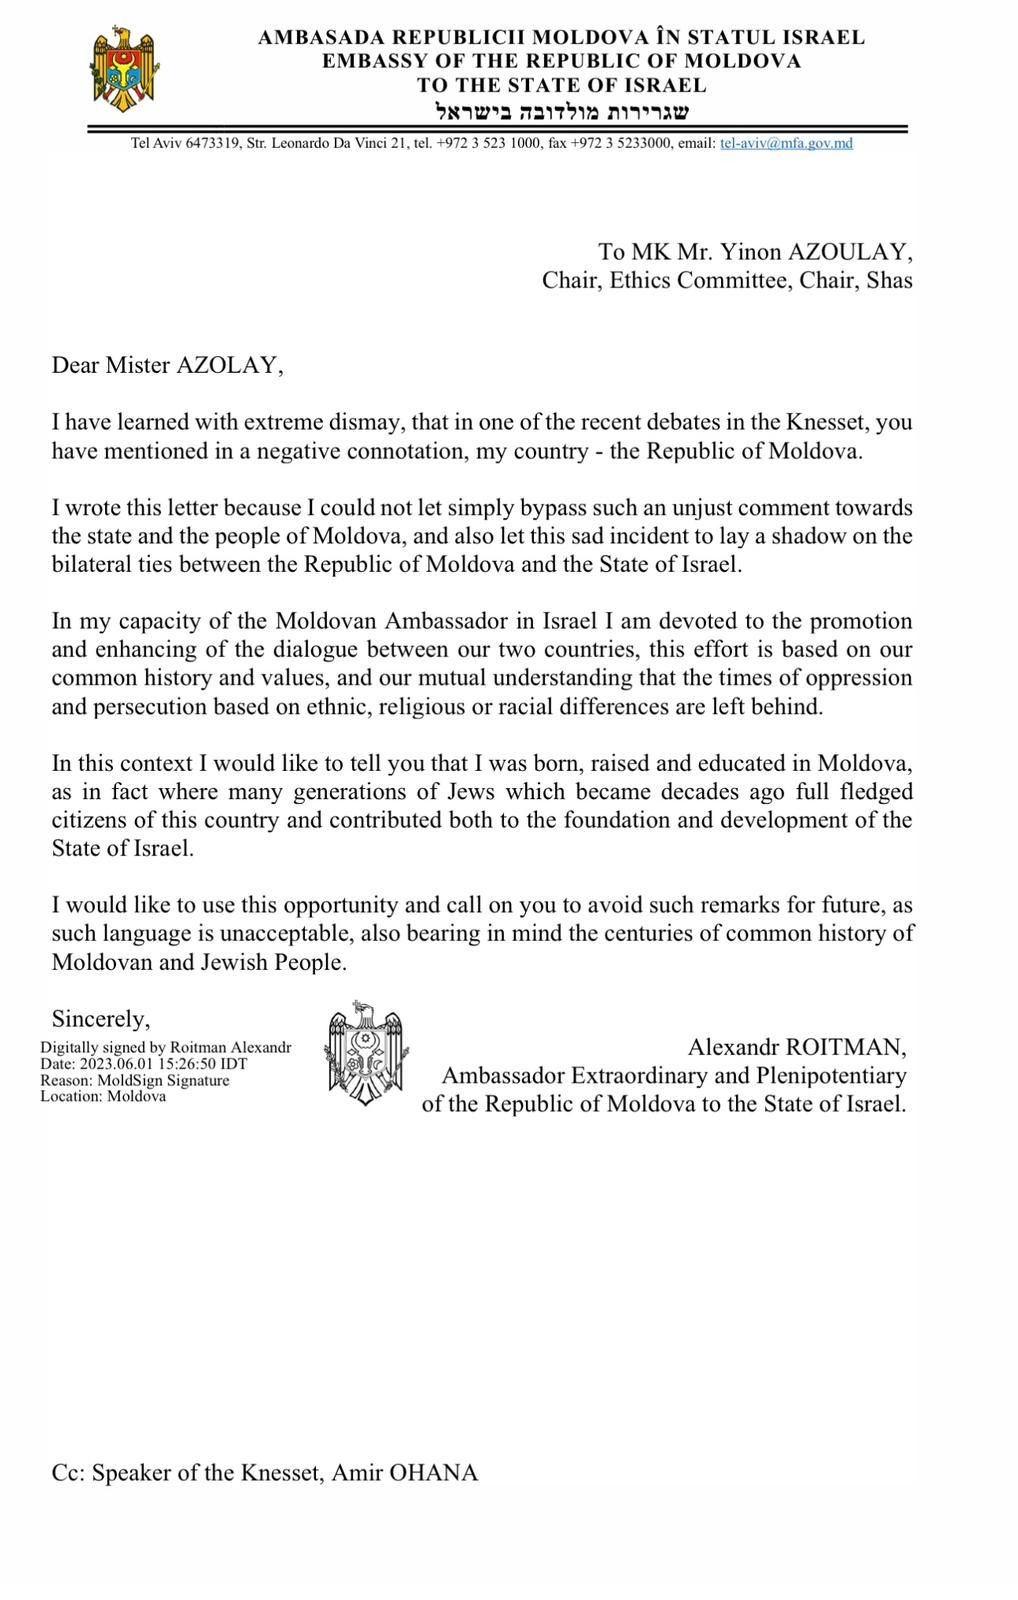 מכתב ששלח שגריר מולדובה לינון אזולאי 